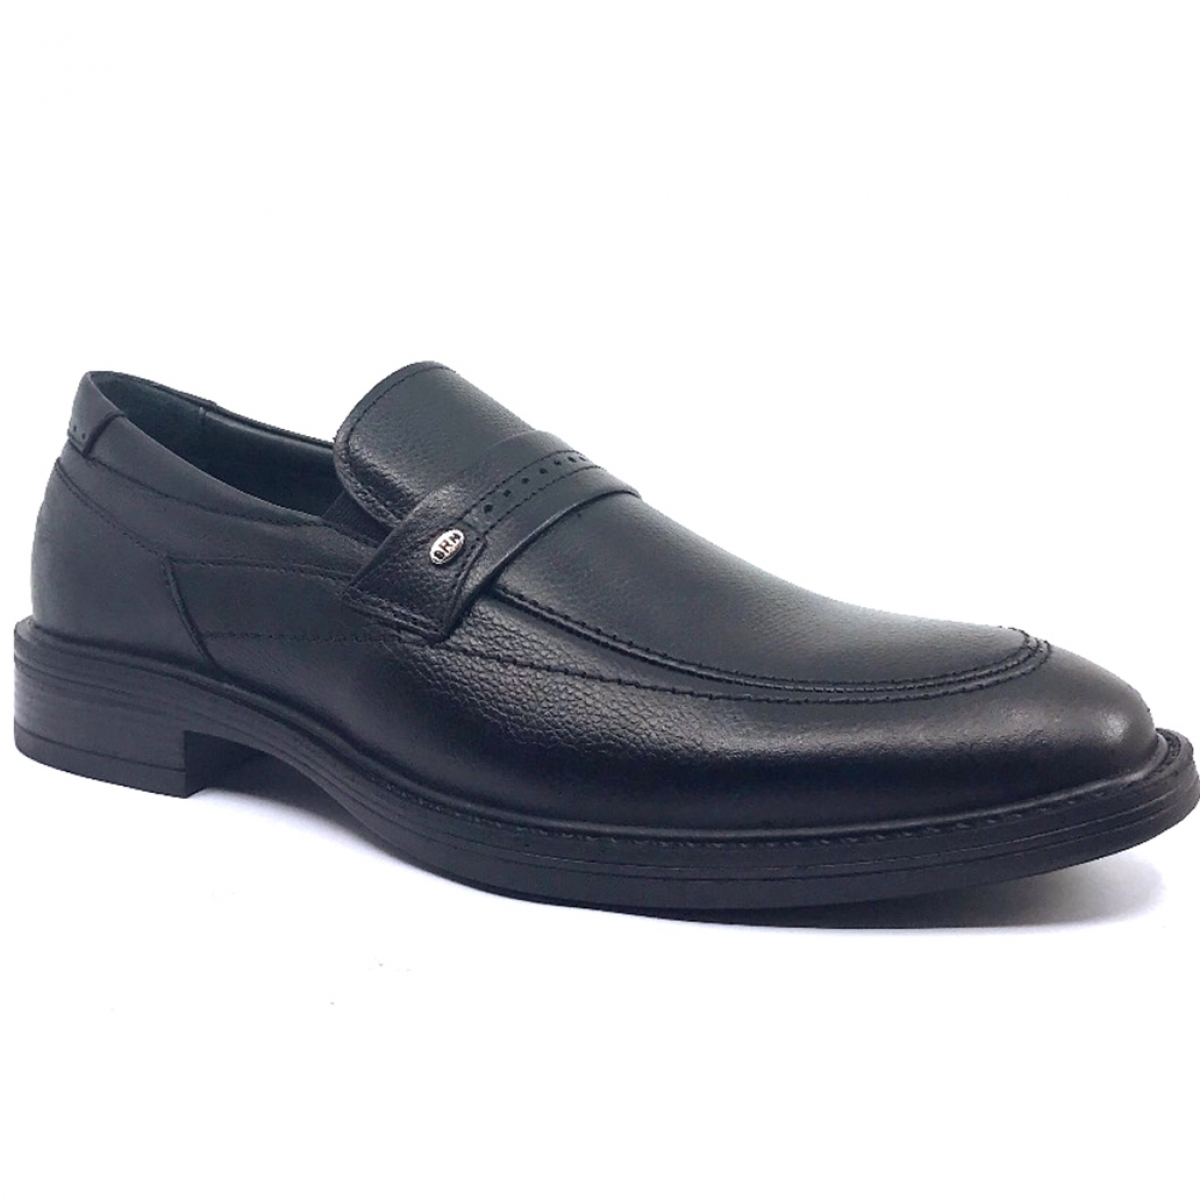 Flo Ayakkabımood 577 Siyah Erkek Ayakkabısı. 1